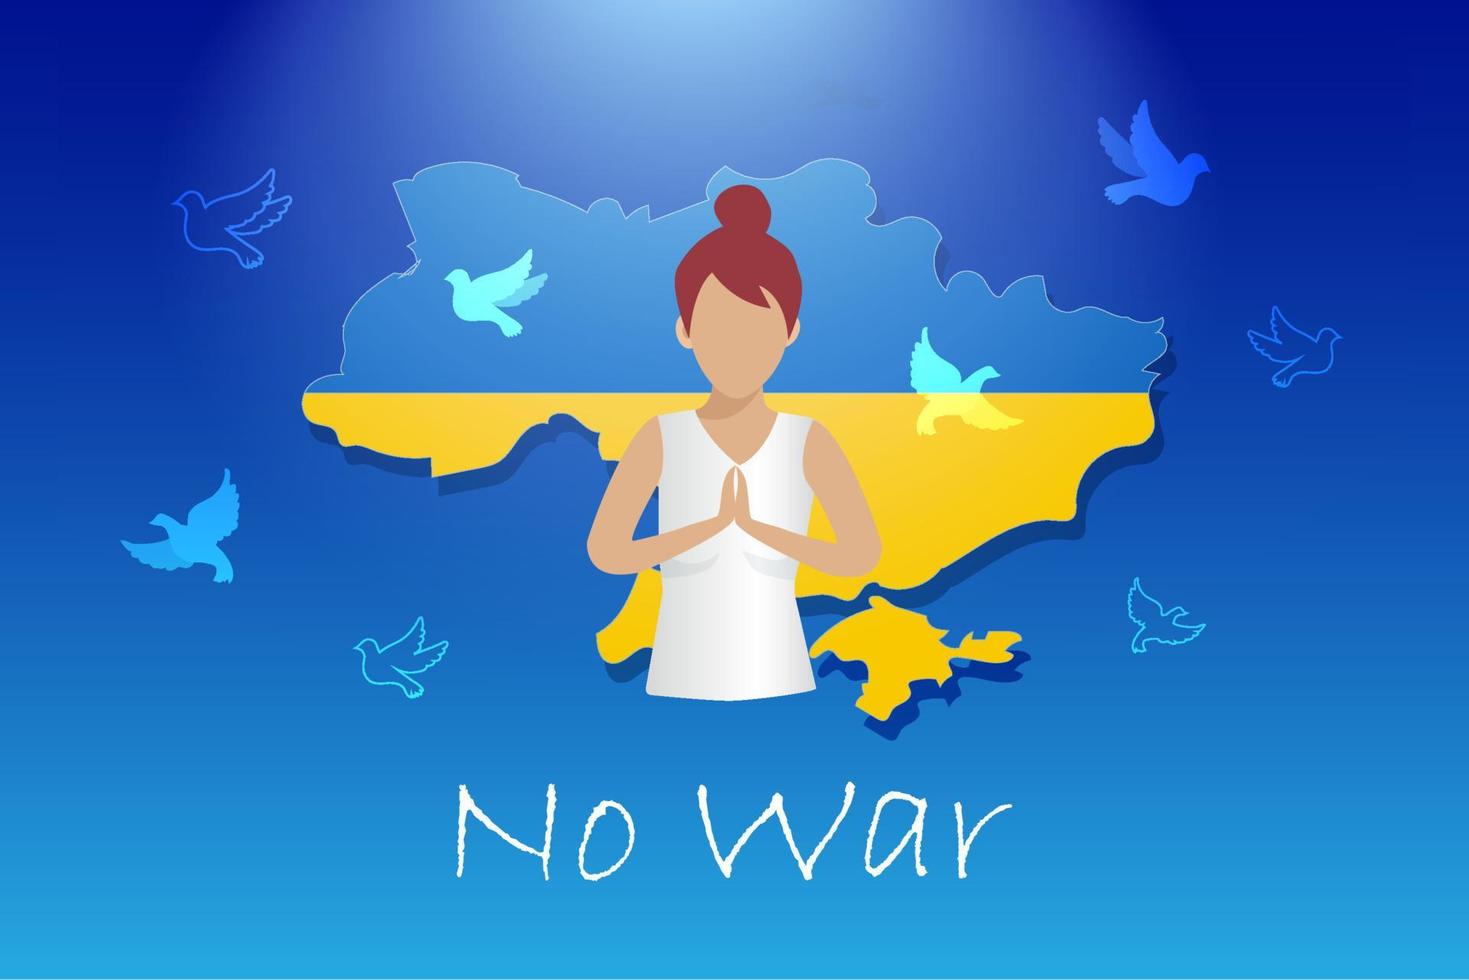 fermare la guerra, pregare per il concetto di ucraina. donna che prega con la mappa dell'ucraina e il piccione volante, simbolo di pace e libertà. protesta internazionale per fermare l'aggressività contro l'Ucraina. vettore